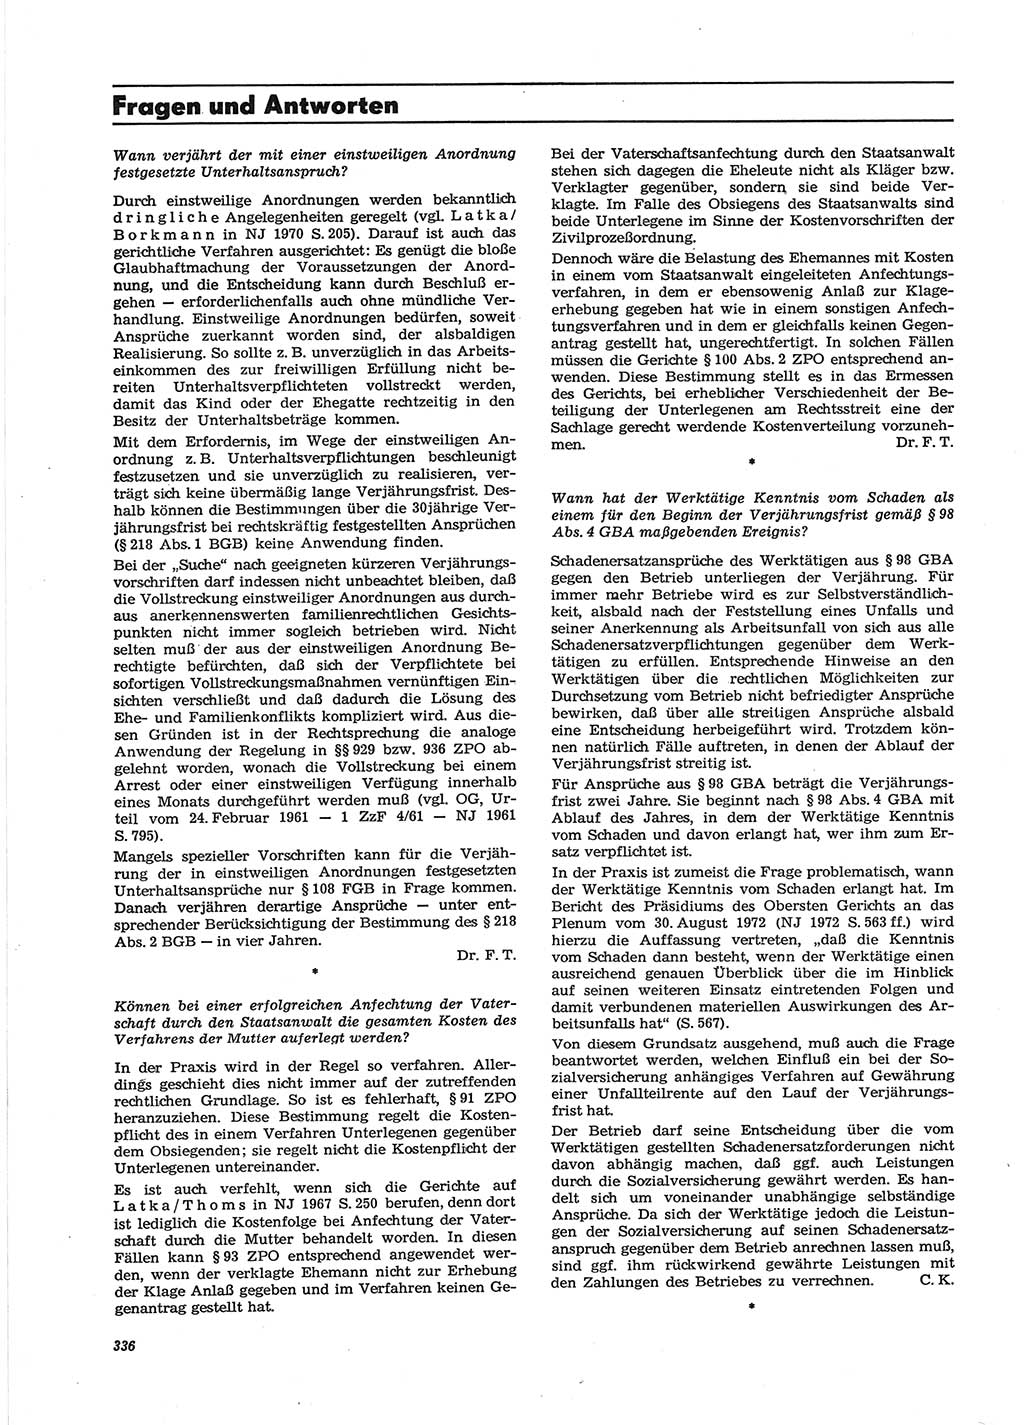 Neue Justiz (NJ), Zeitschrift für Recht und Rechtswissenschaft [Deutsche Demokratische Republik (DDR)], 28. Jahrgang 1974, Seite 336 (NJ DDR 1974, S. 336)